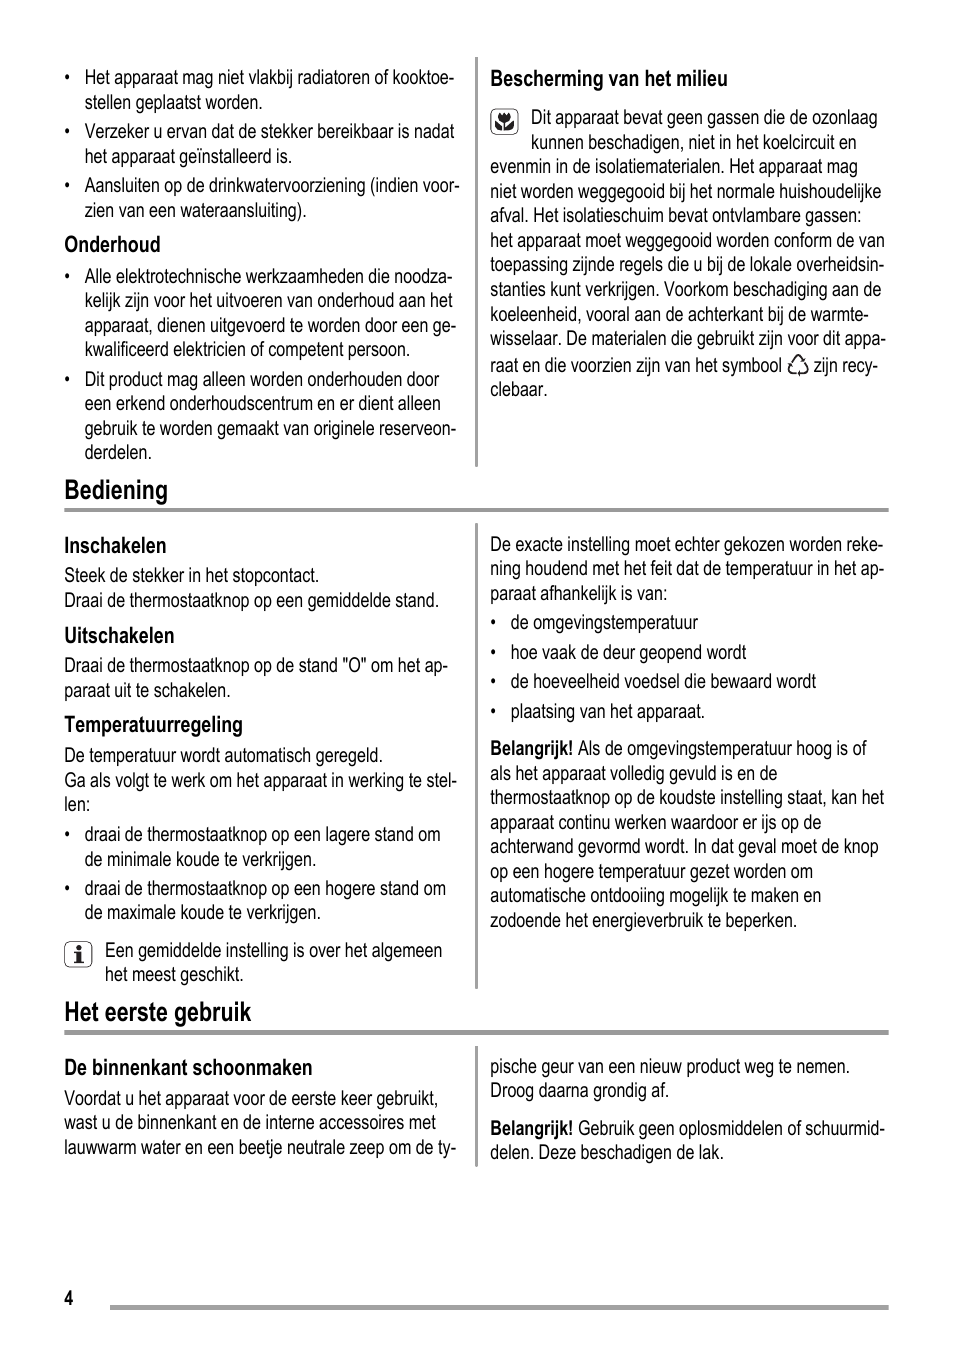 Bediening, Het eerste gebruik | ZANKER KBU 12401 DK User Manual | Page 4 / 48